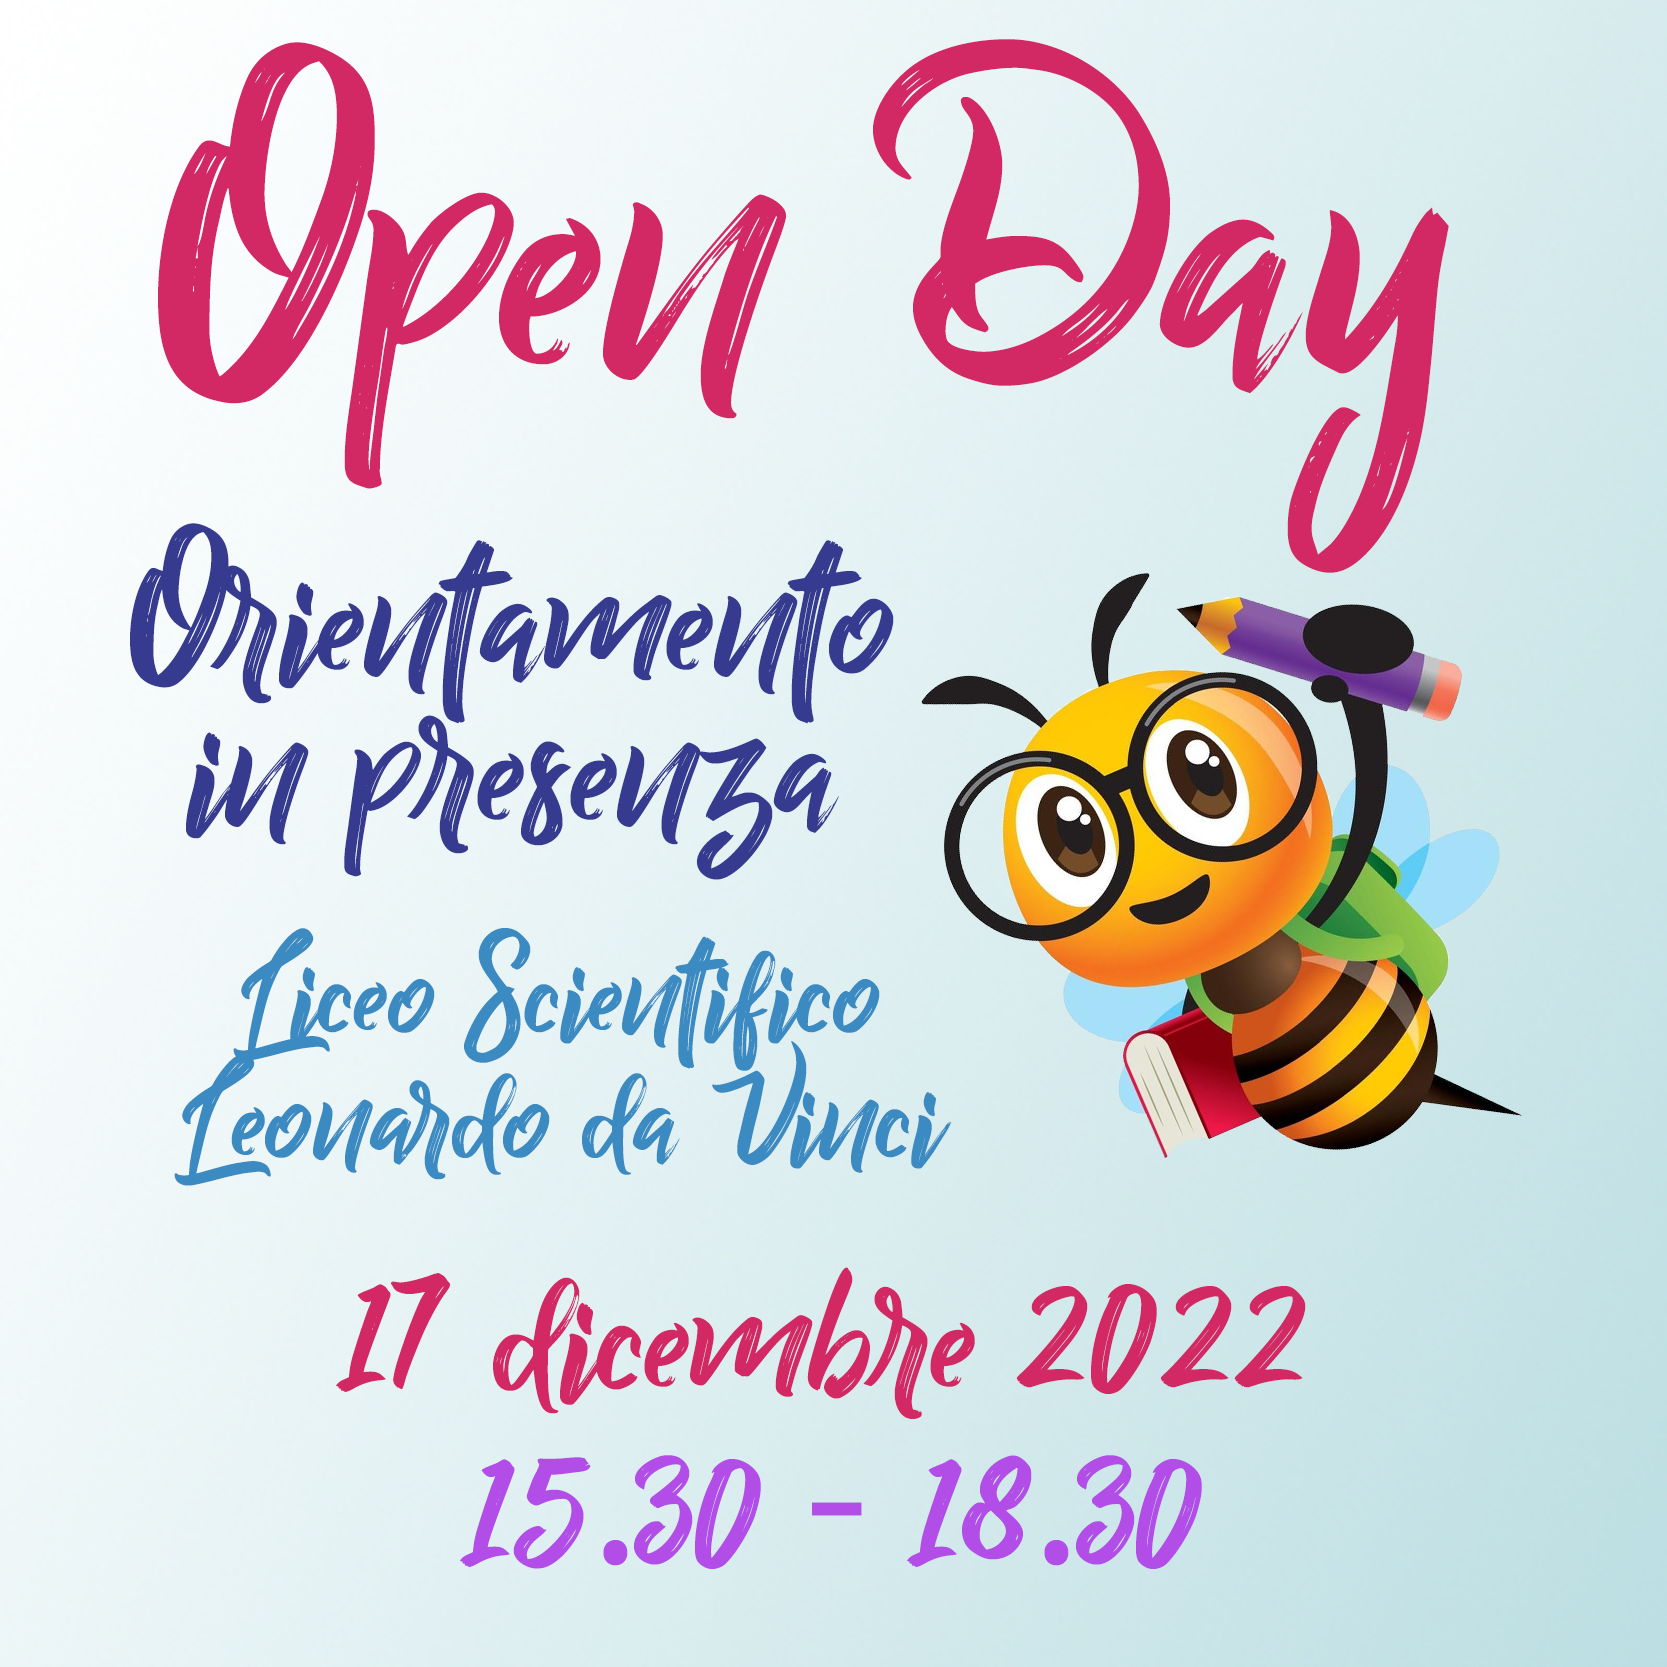 Open day 17 dicembre 2022